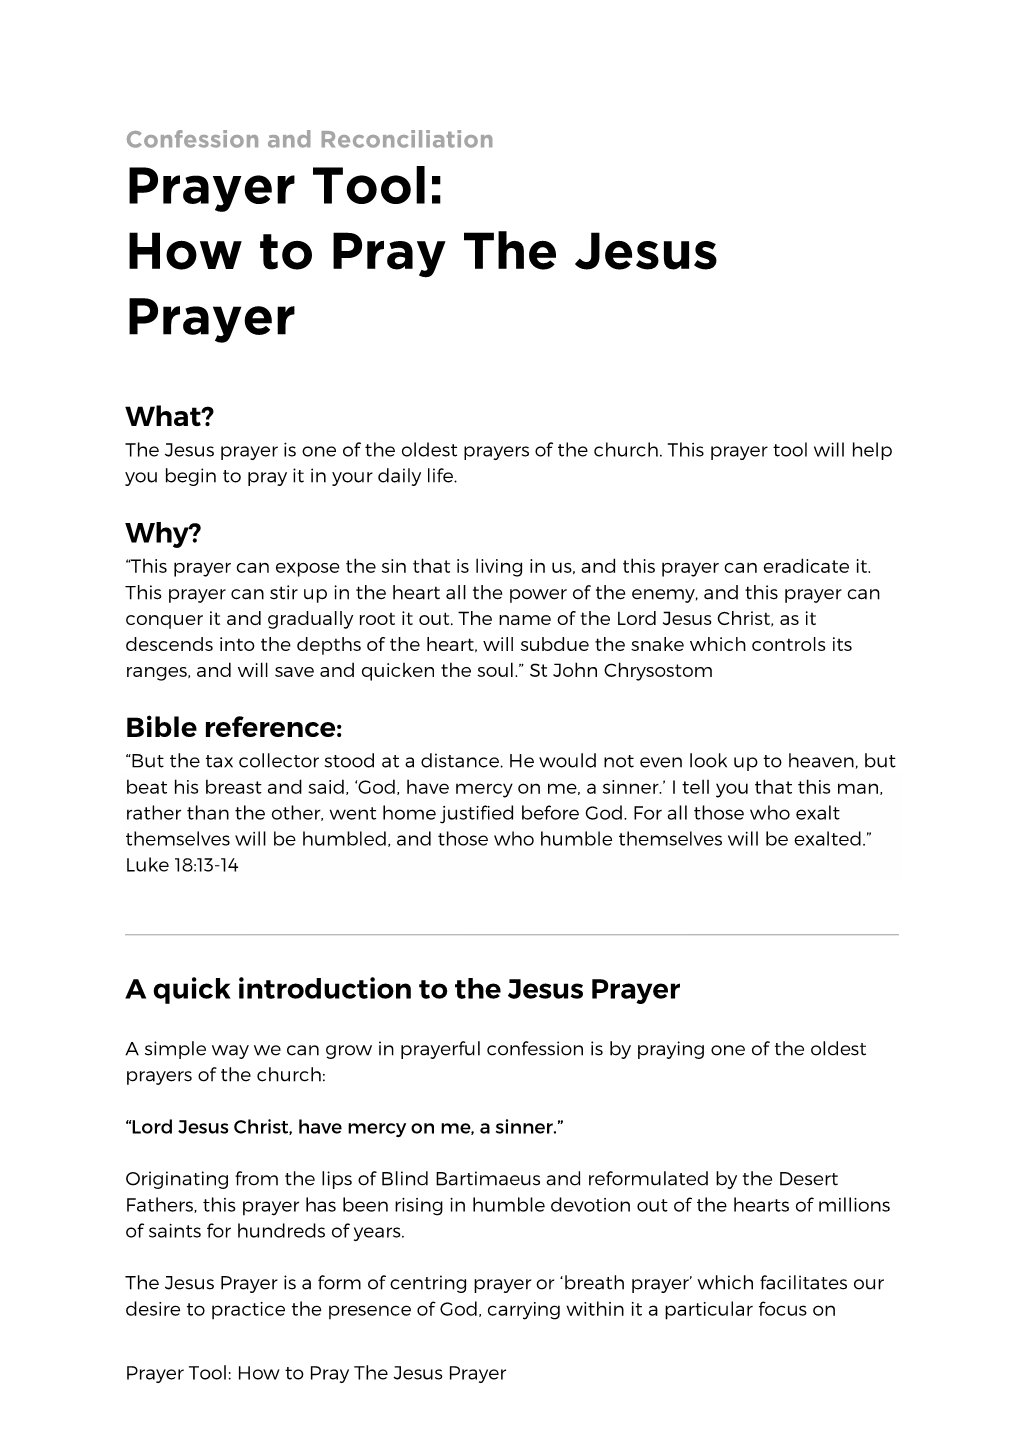 How to Pray the Jesus Prayer